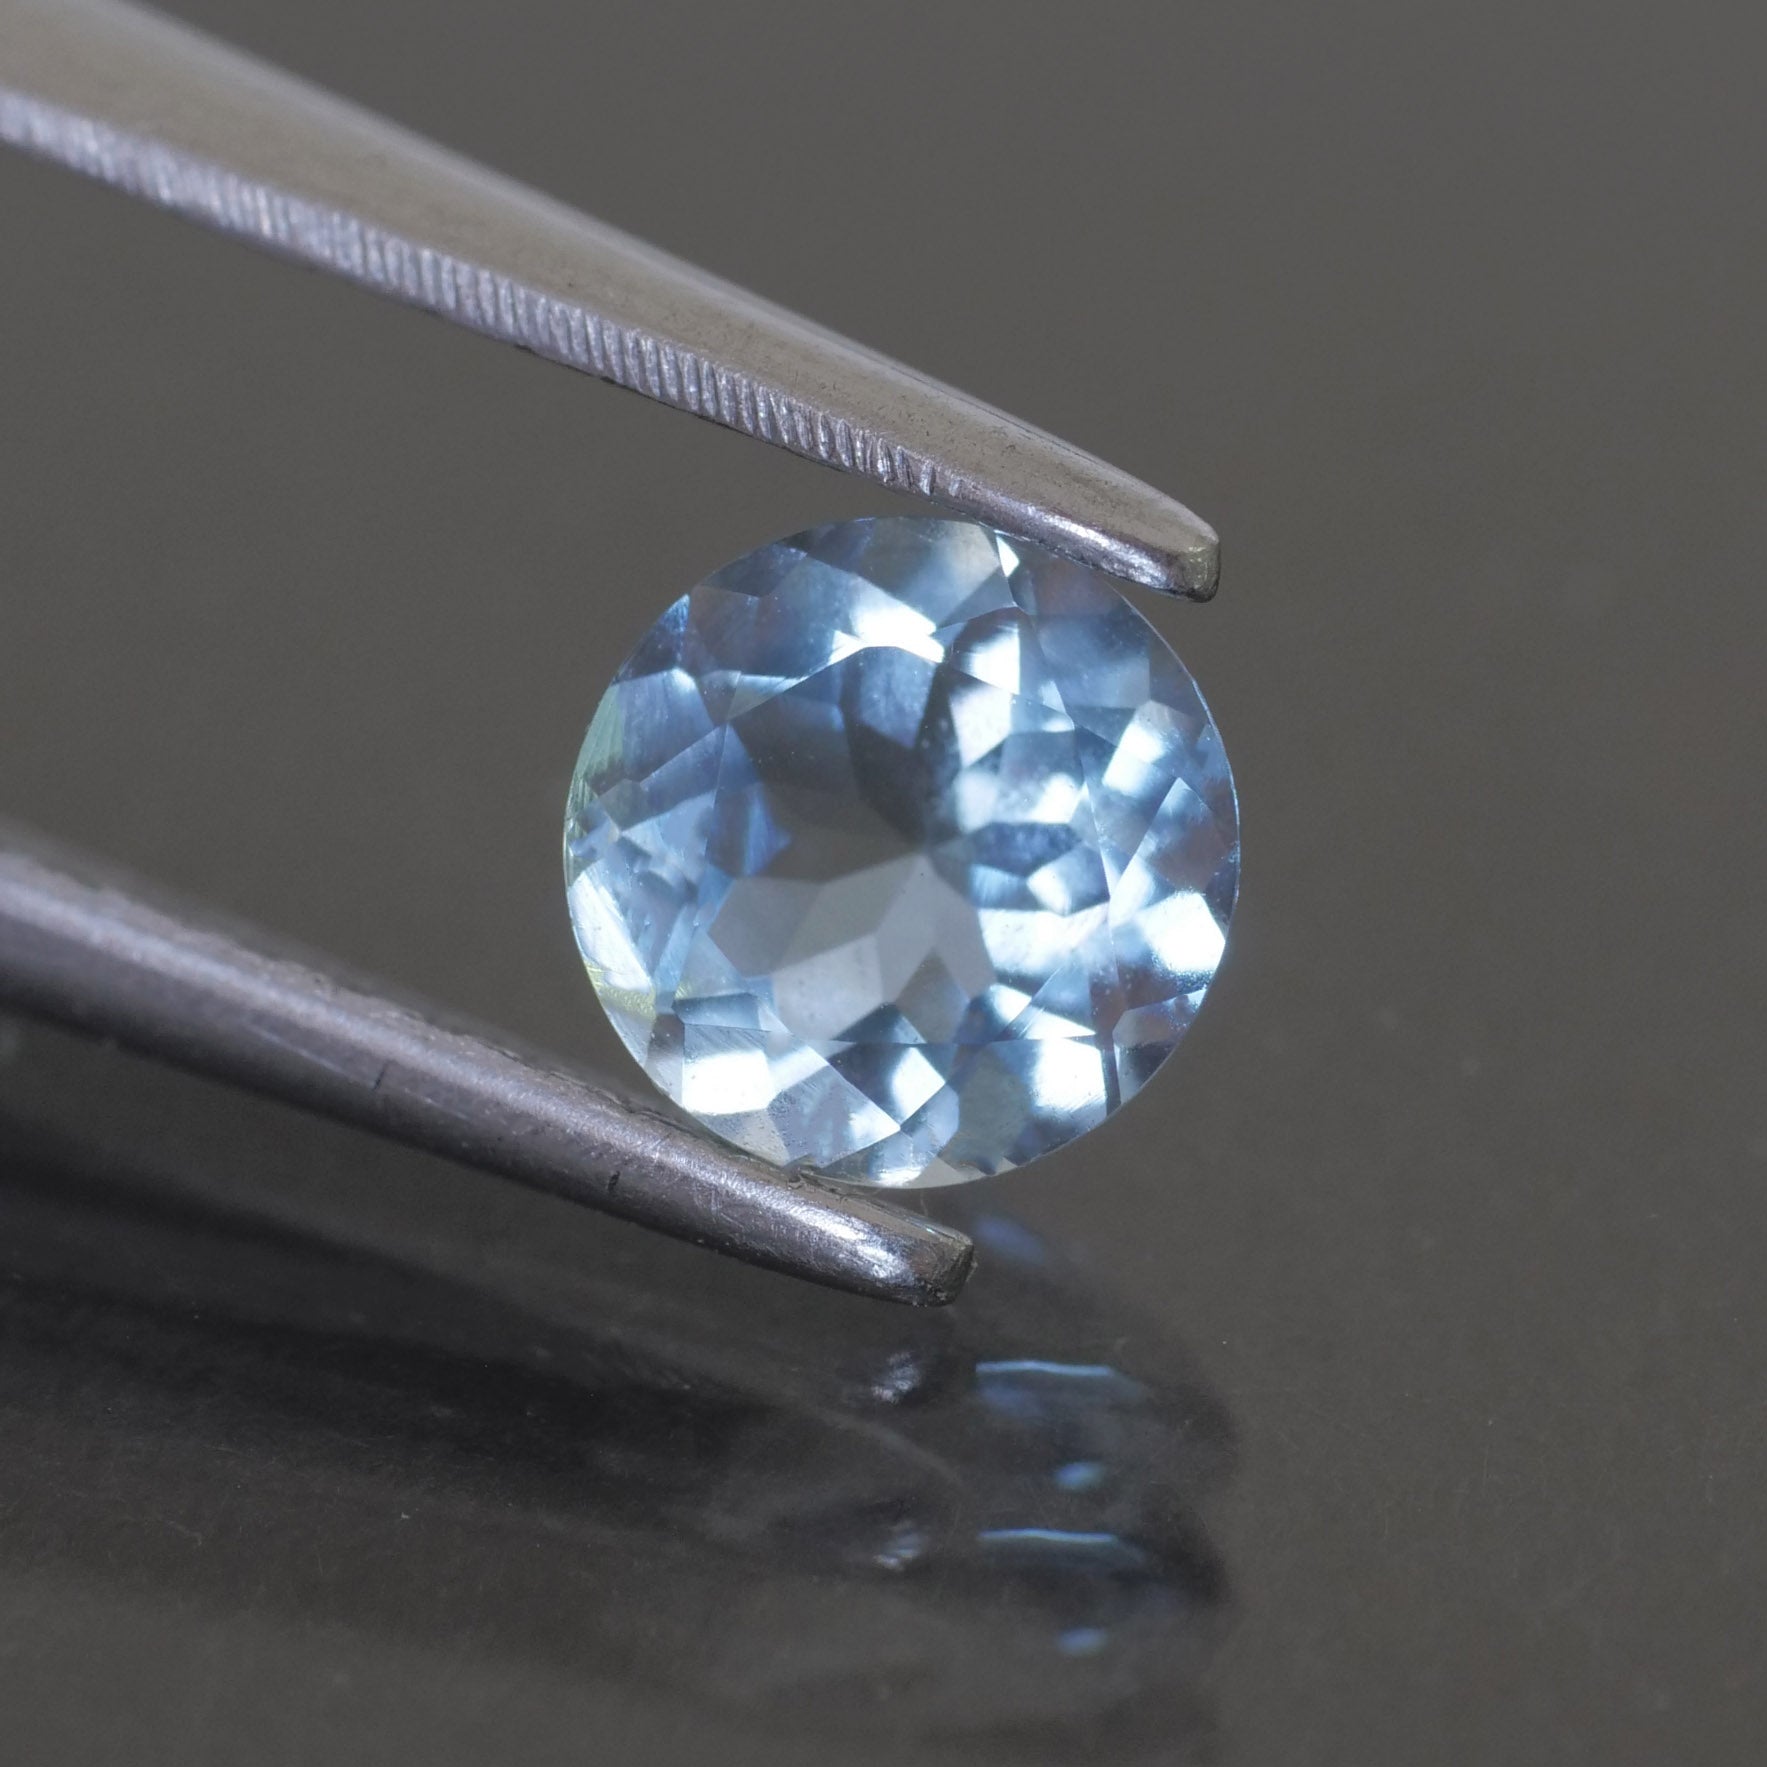 Aquamarine | round cut 5mm, 0.5ct. VVS clarity - Eden Garden Jewelry™